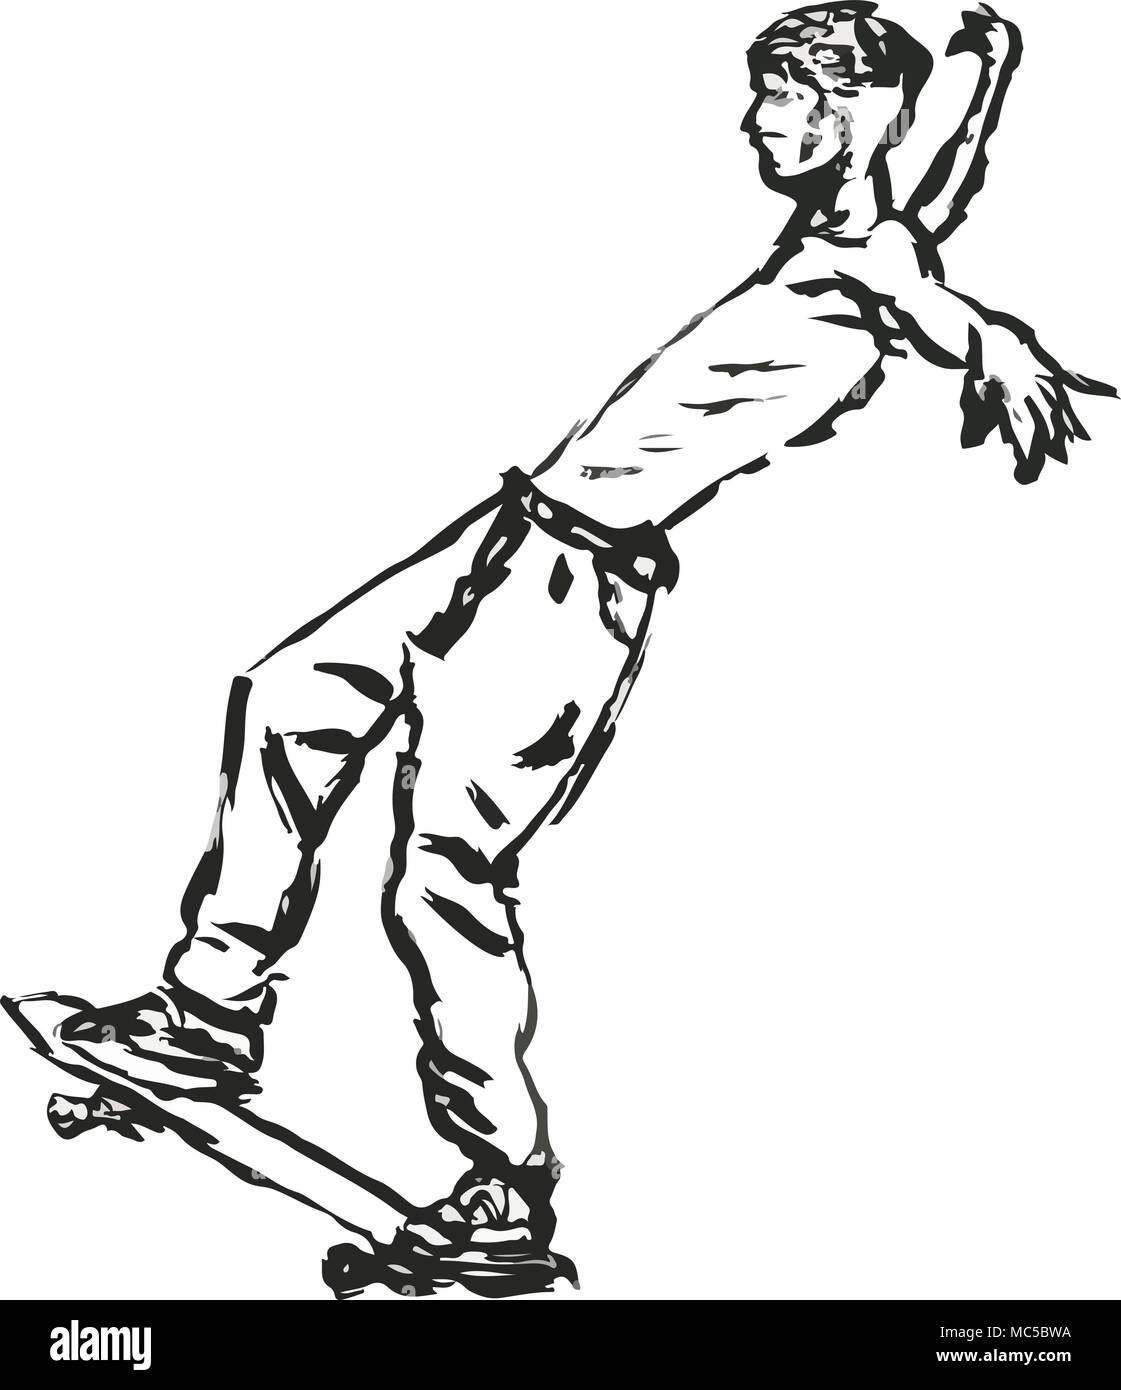 Leaning backwards on skateboard-Skater tricks, scratchy ink illustration Stock Vector